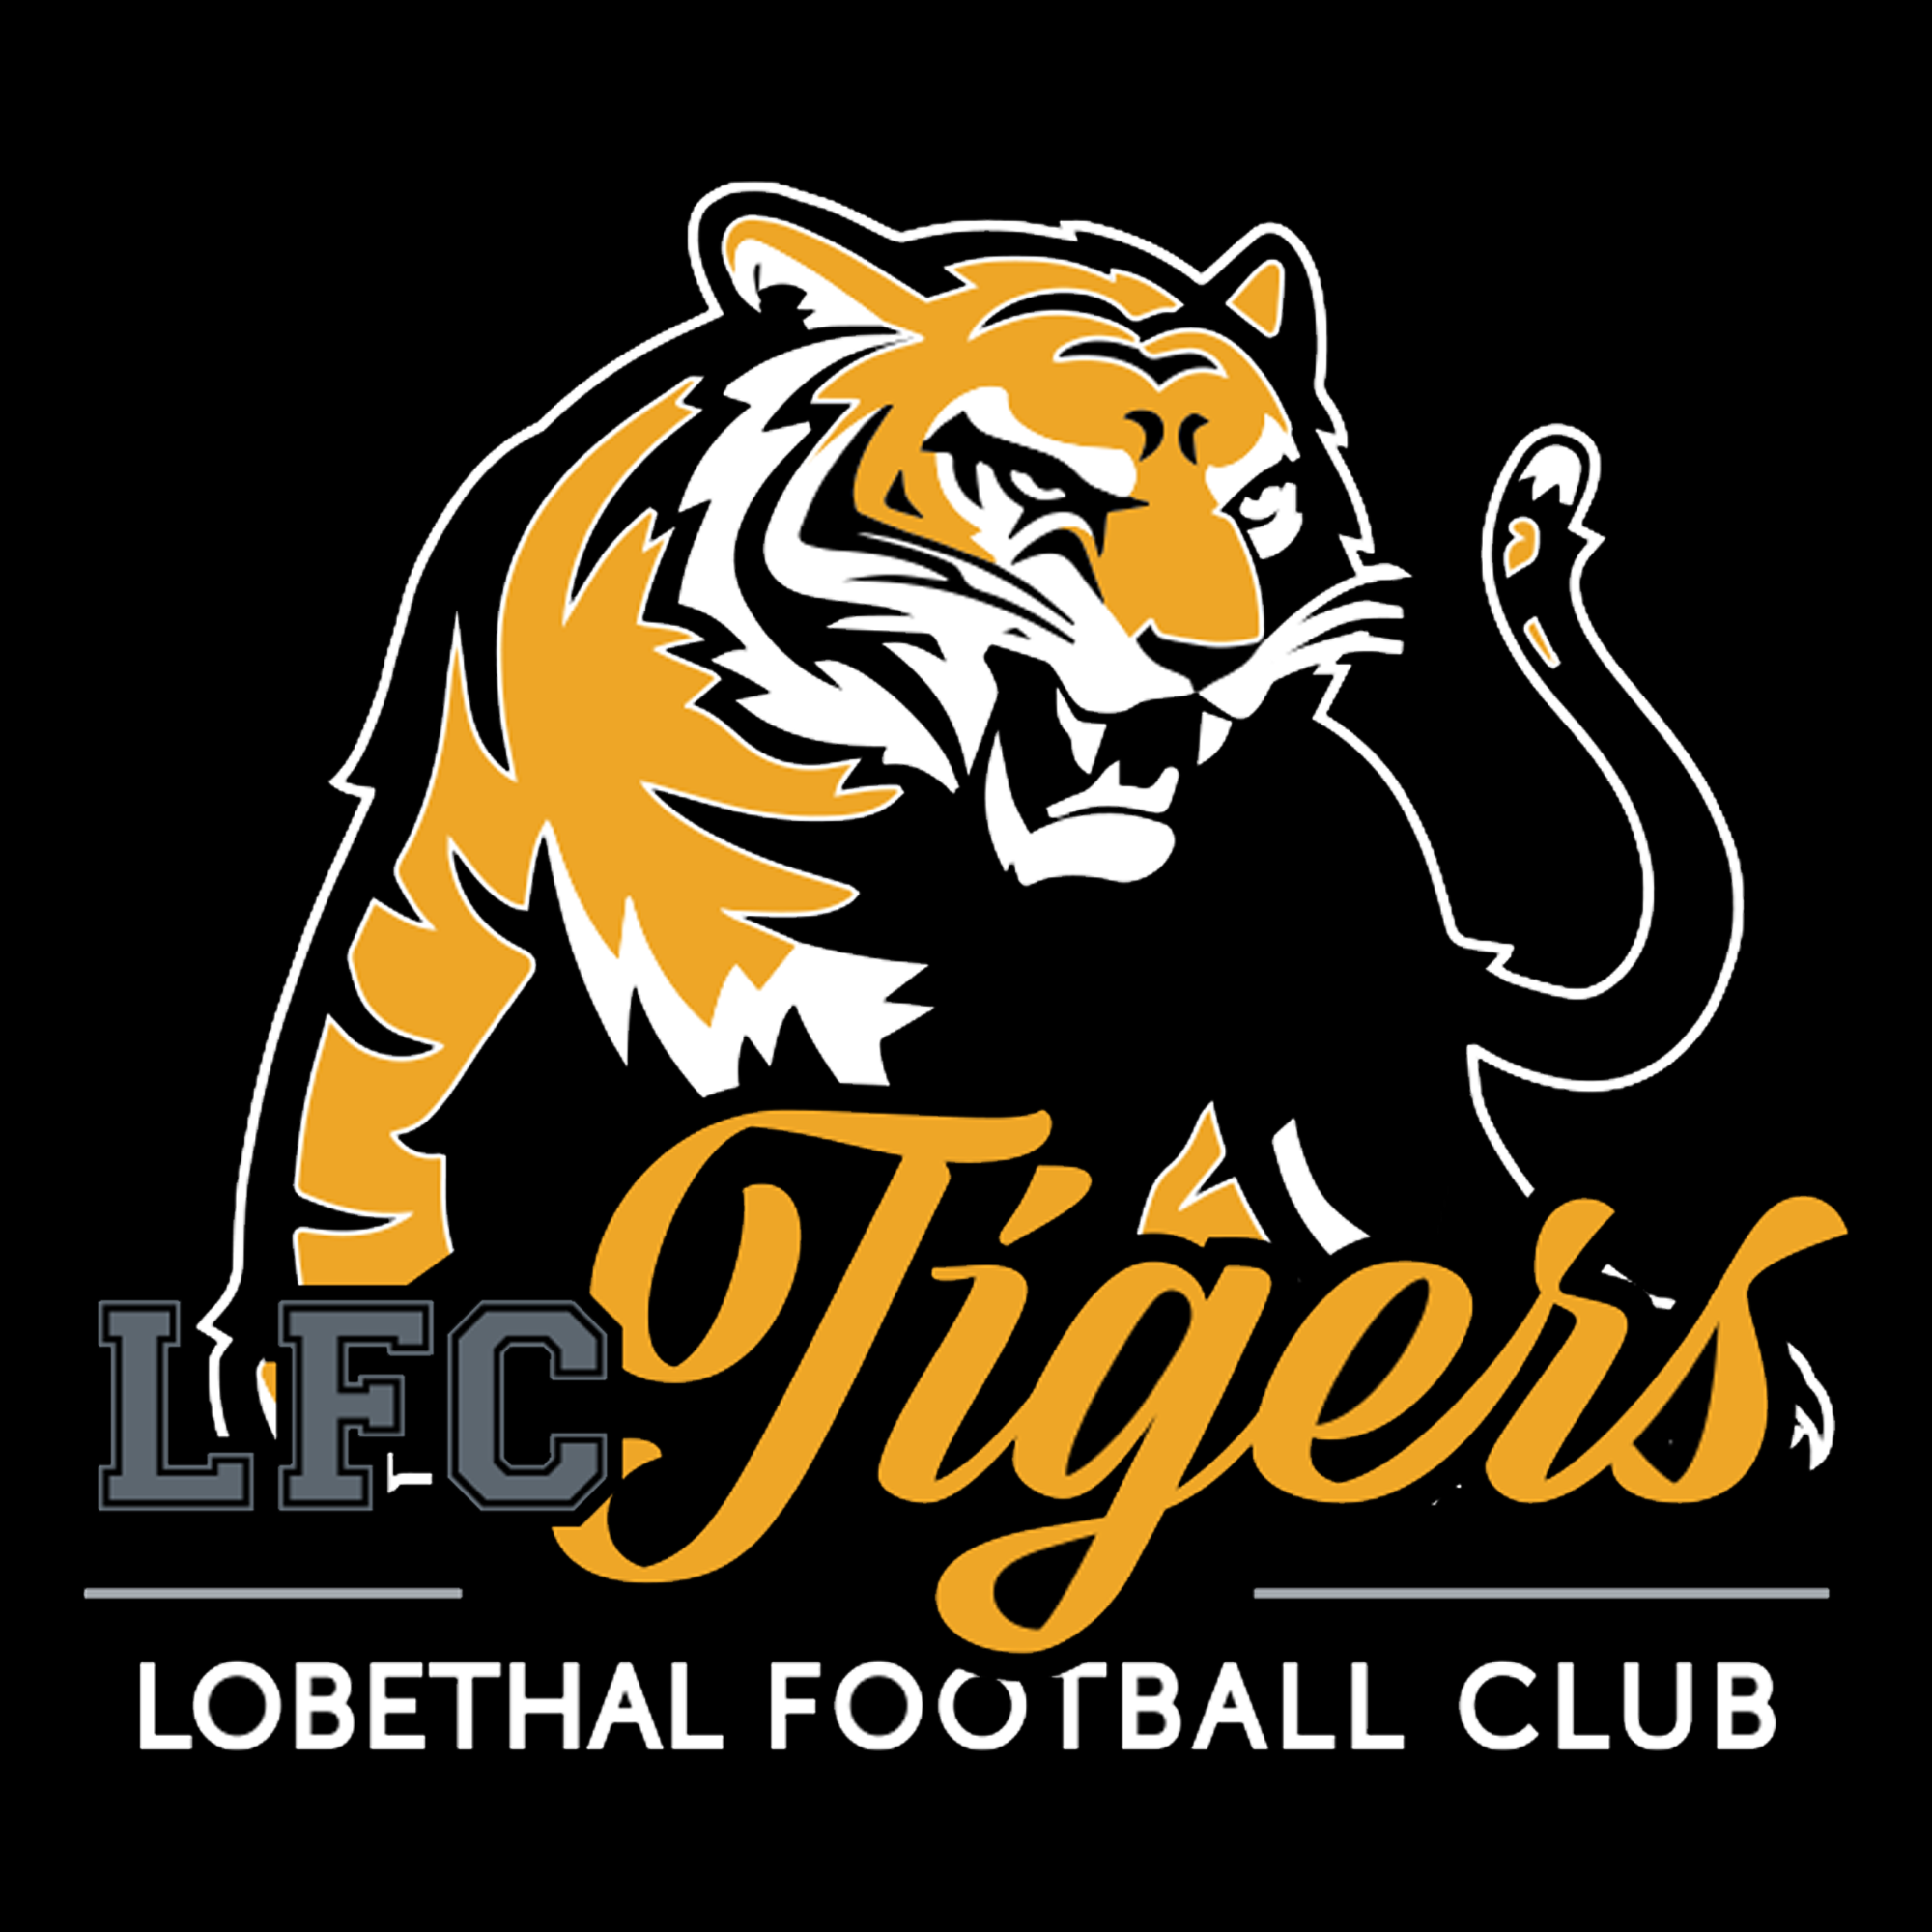 Lobethal Football Club